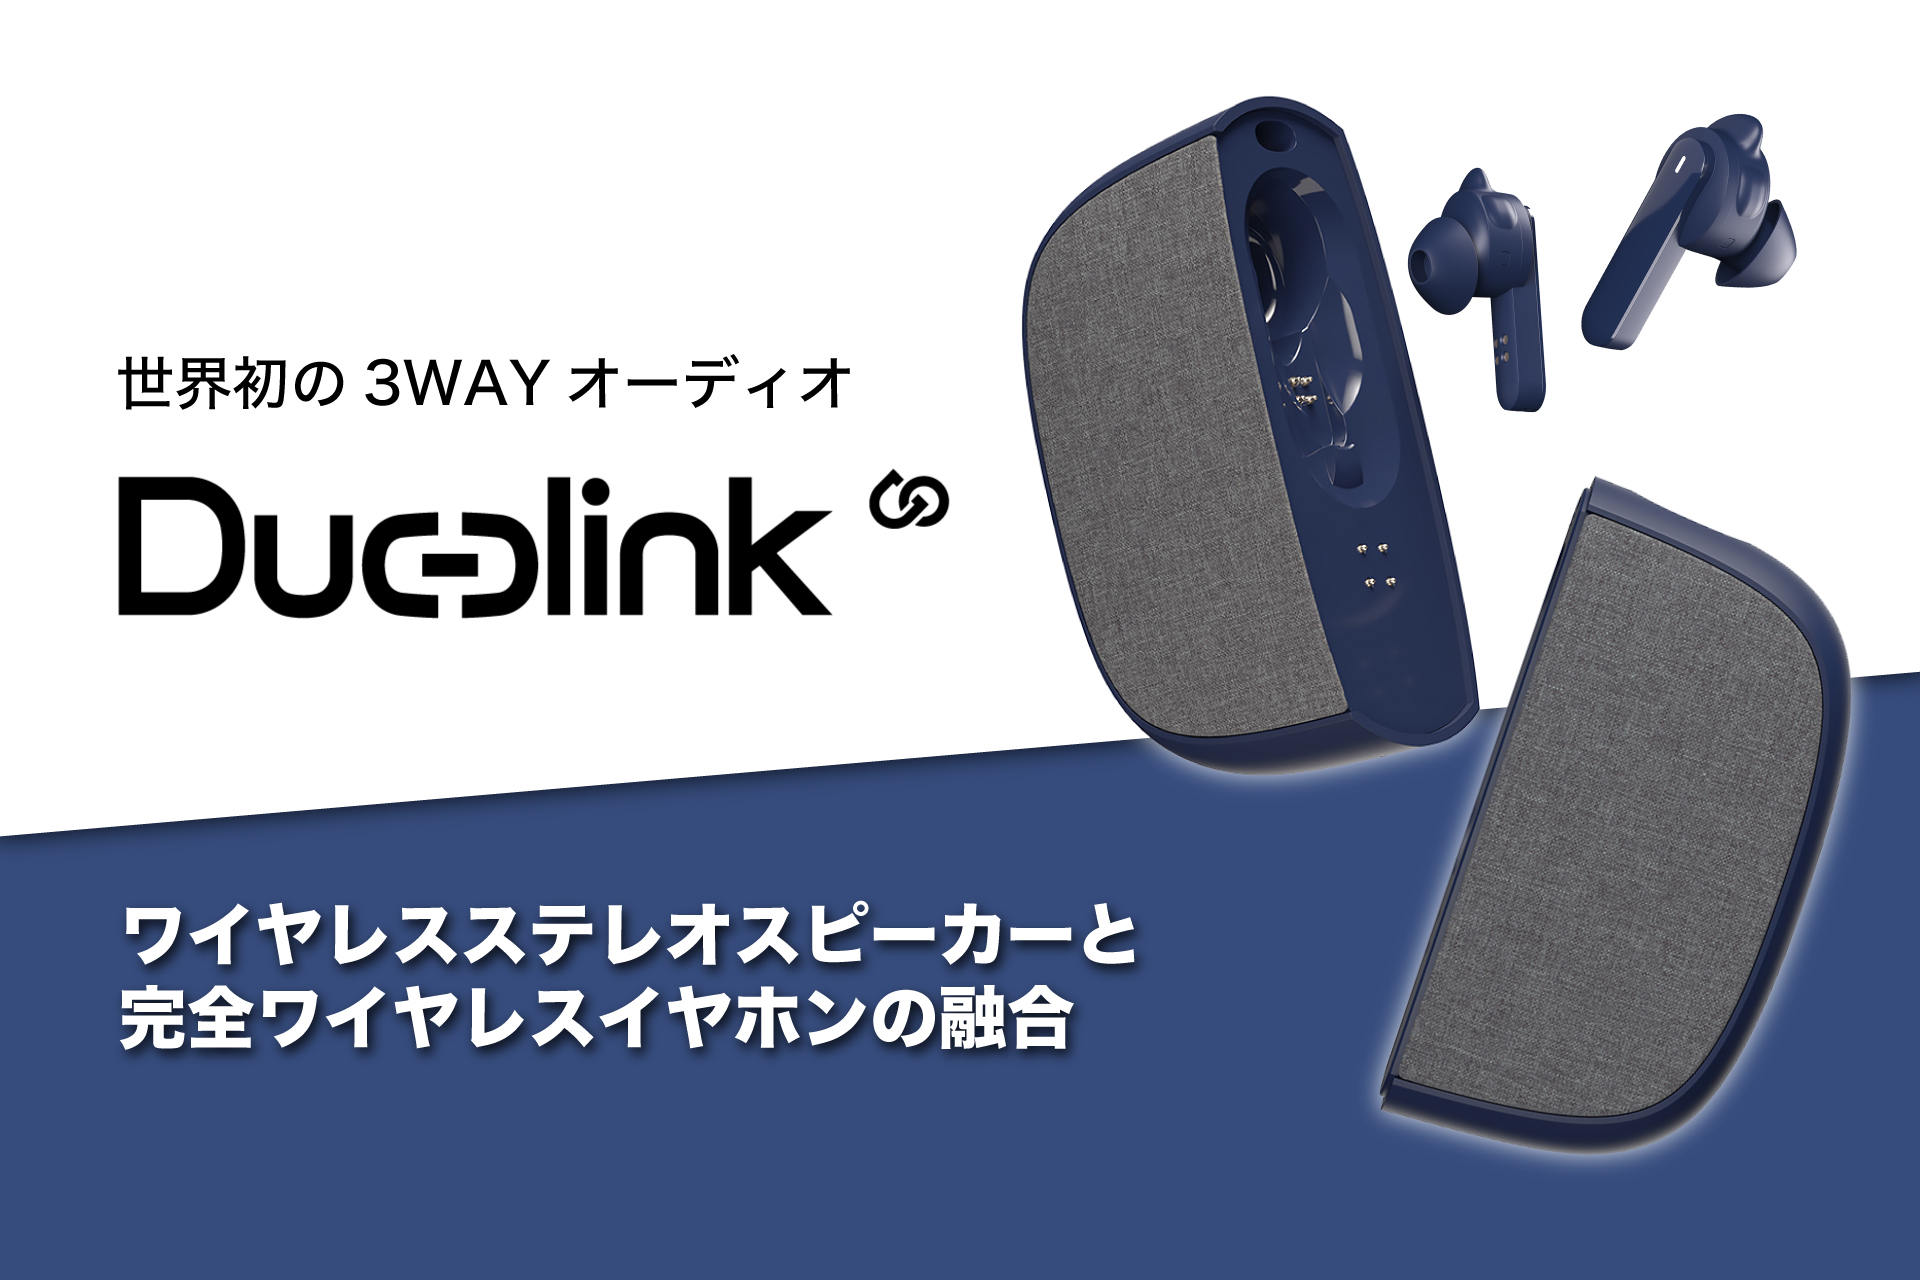 Bluetoothスピーカーと完全ワイヤレスイヤホンが融合した【Duolink】